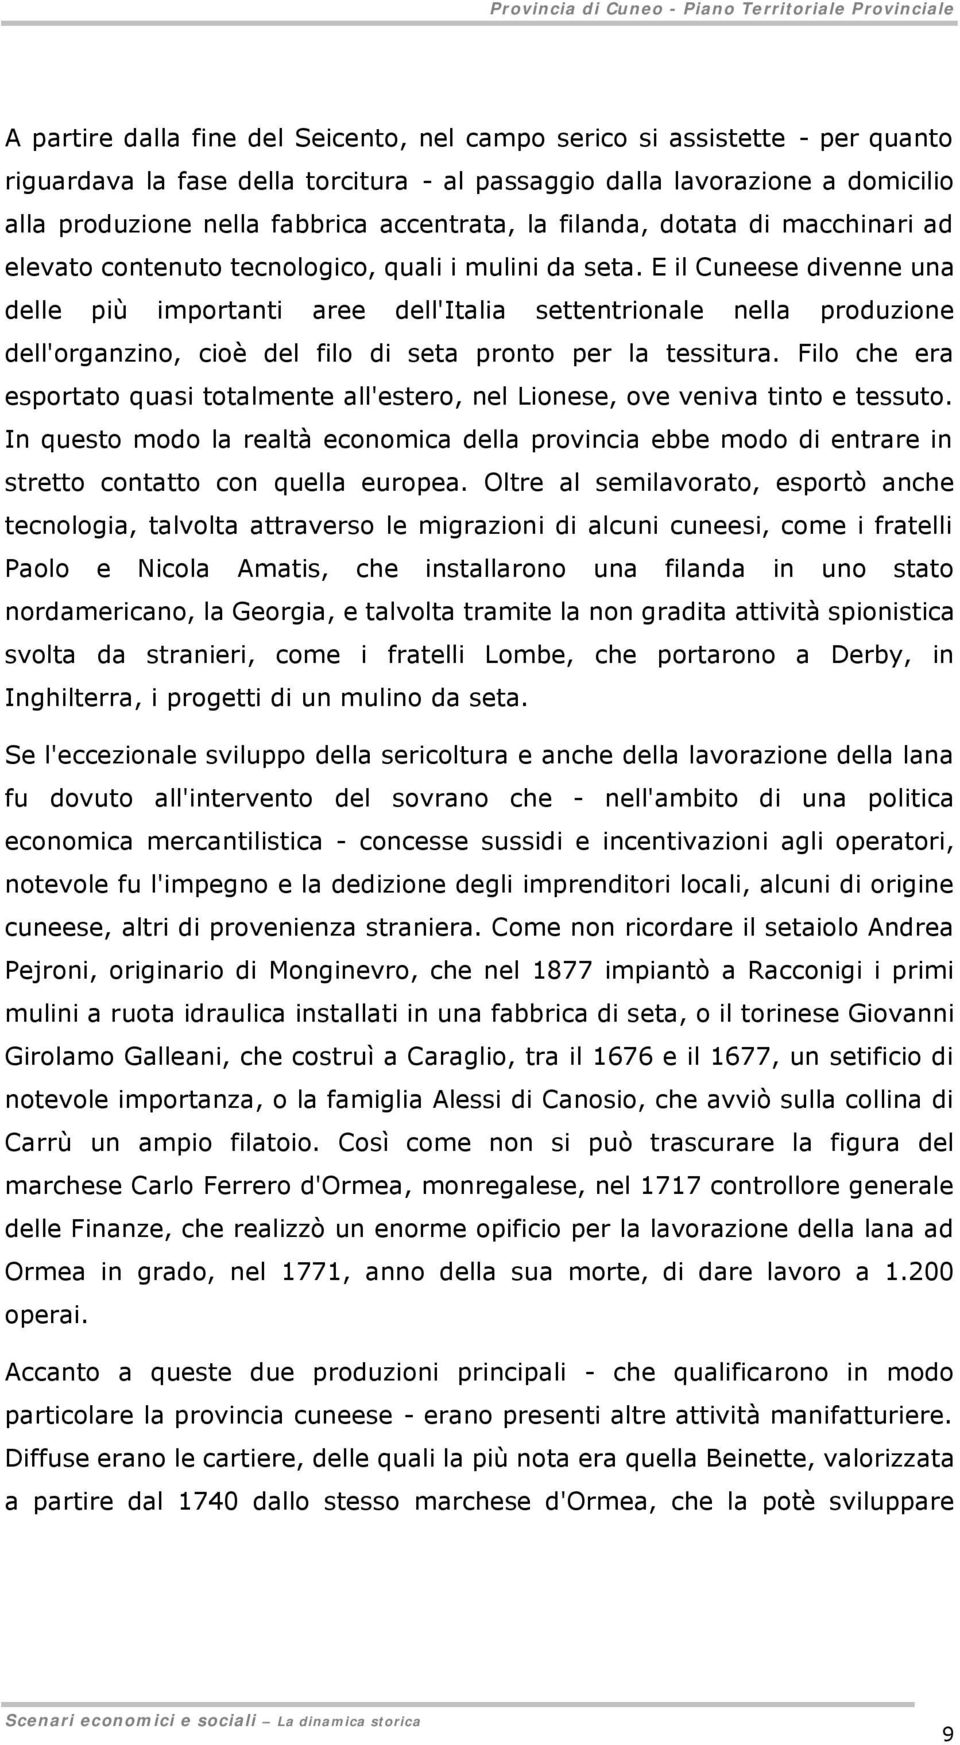 E il Cuneese divenne una delle più importanti aree dell'italia settentrionale nella produzione dell'organzino, cioè del filo di seta pronto per la tessitura.